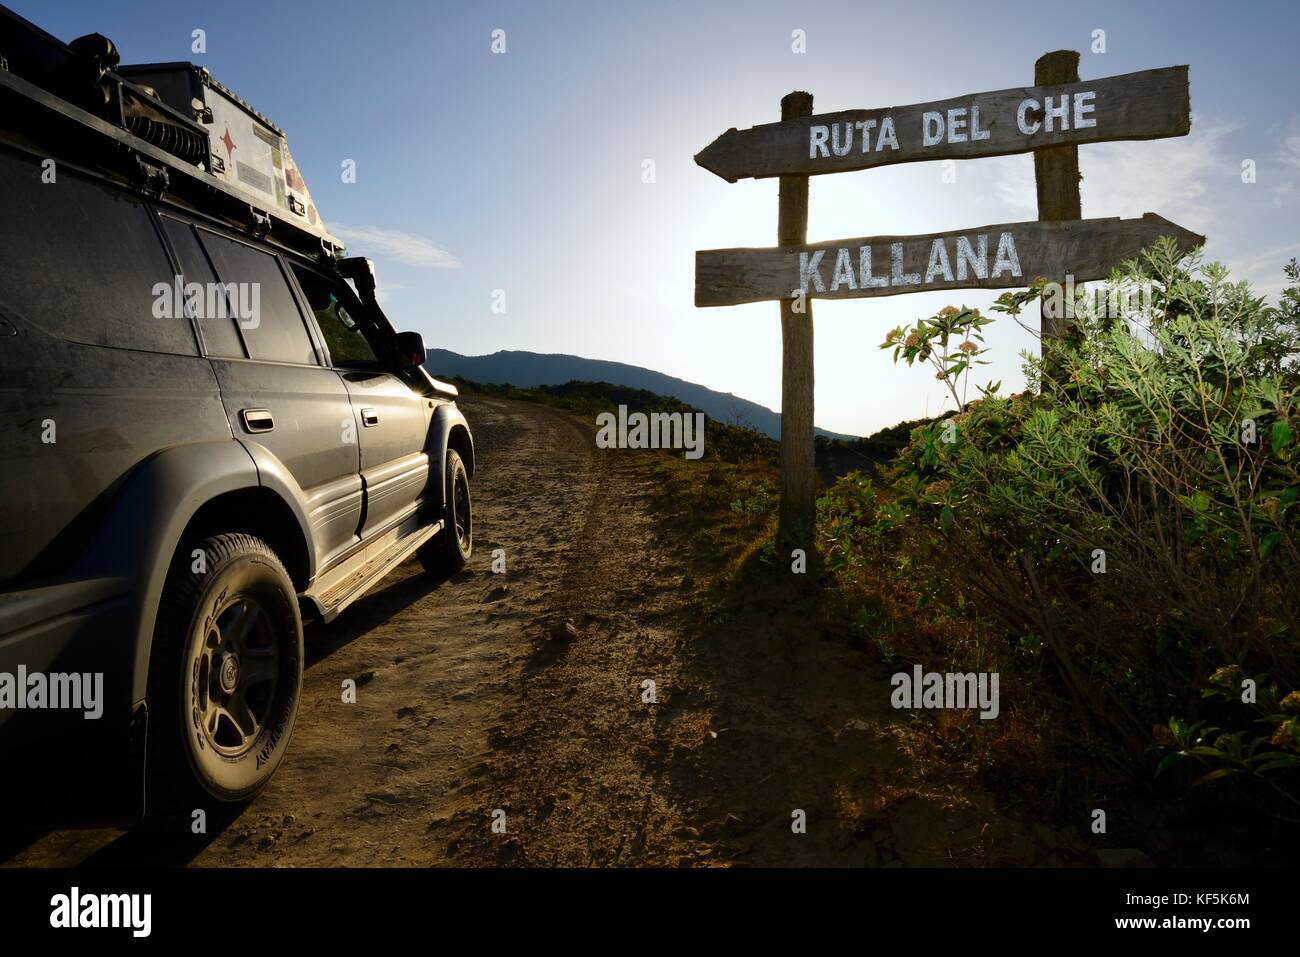 Road sign Ruta del Che, SUV on road, Santa Cruz, Bolivia Stock Photo